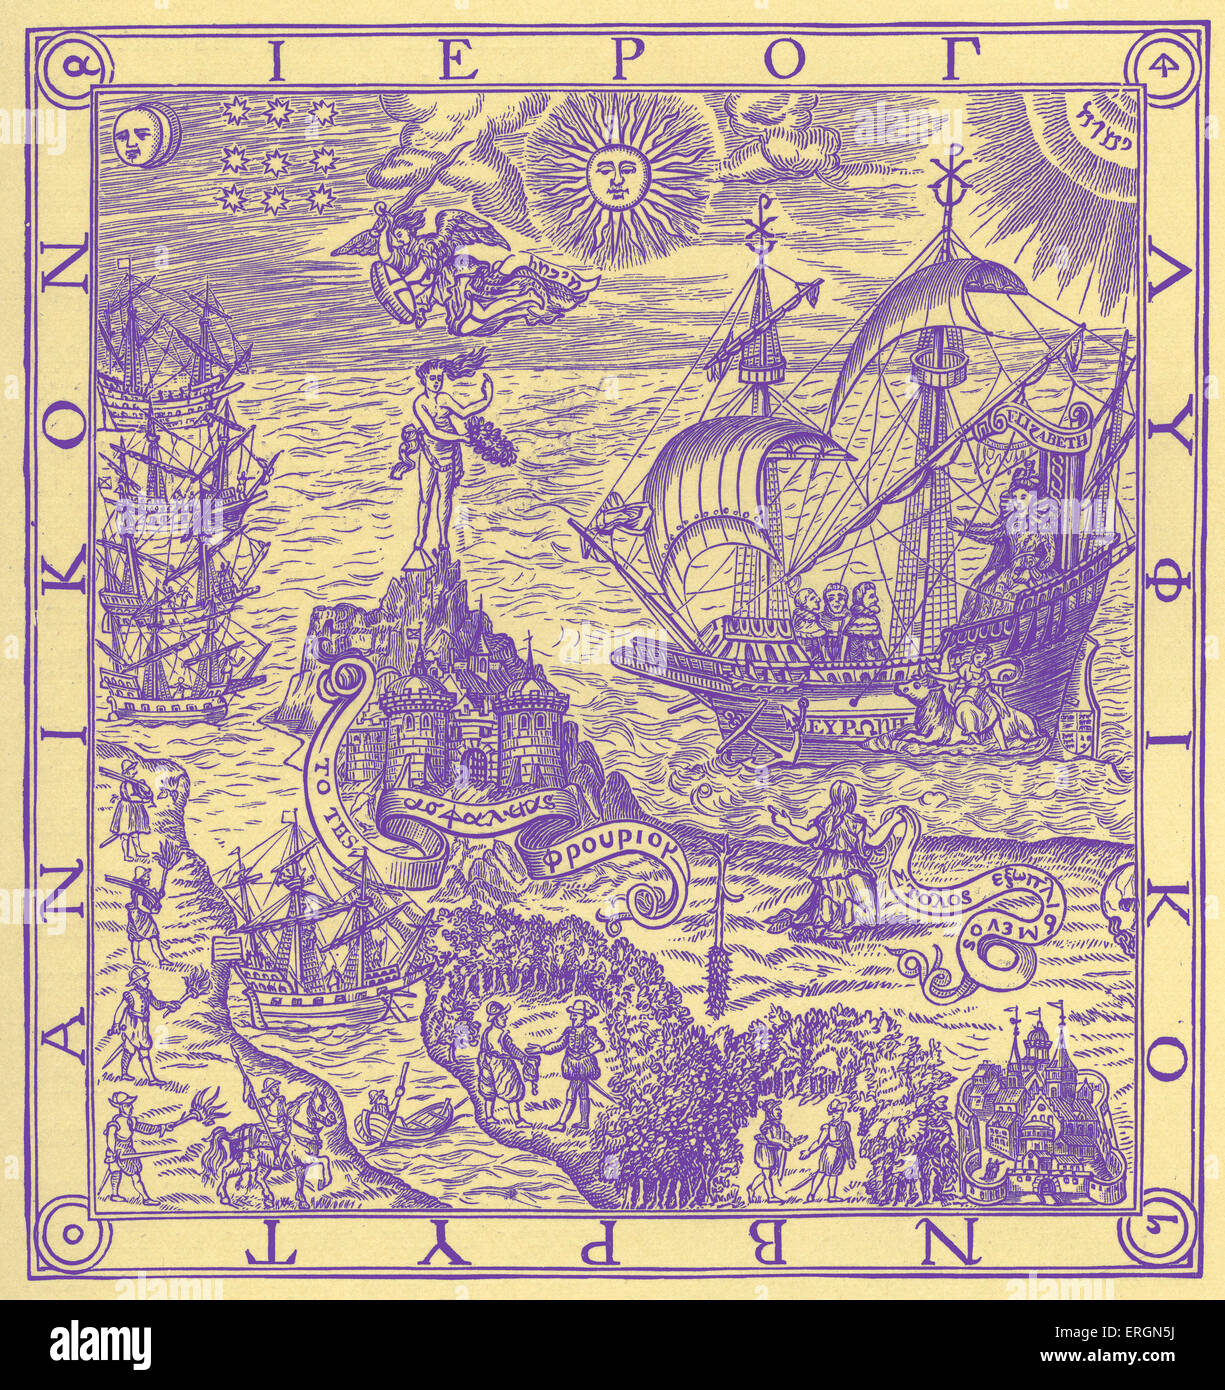 Una de Gran Bretaña, el jeroglífico fronispiece a John Dee del "Arte de la navegación", publicado el año 1577. La alegoría representa a la Reina Foto de stock